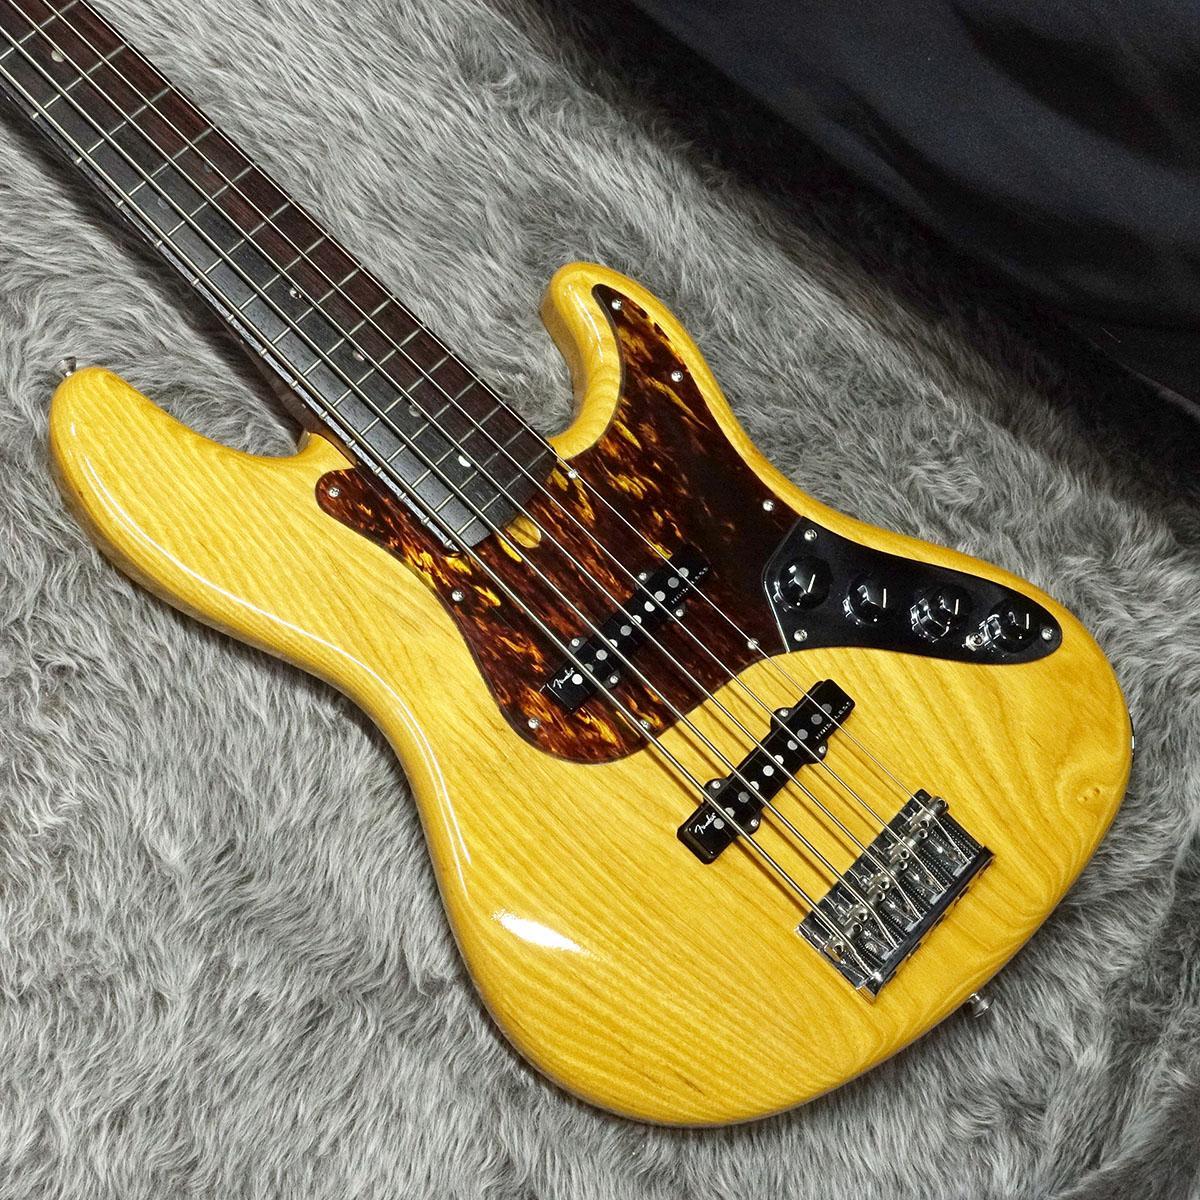 【メーカー直売】 激安 激安特価 送料無料 Fender Deluxe Jazz Bass V Kazuki Arai RW Vintage Natural modularkitcheninteriors.com modularkitcheninteriors.com